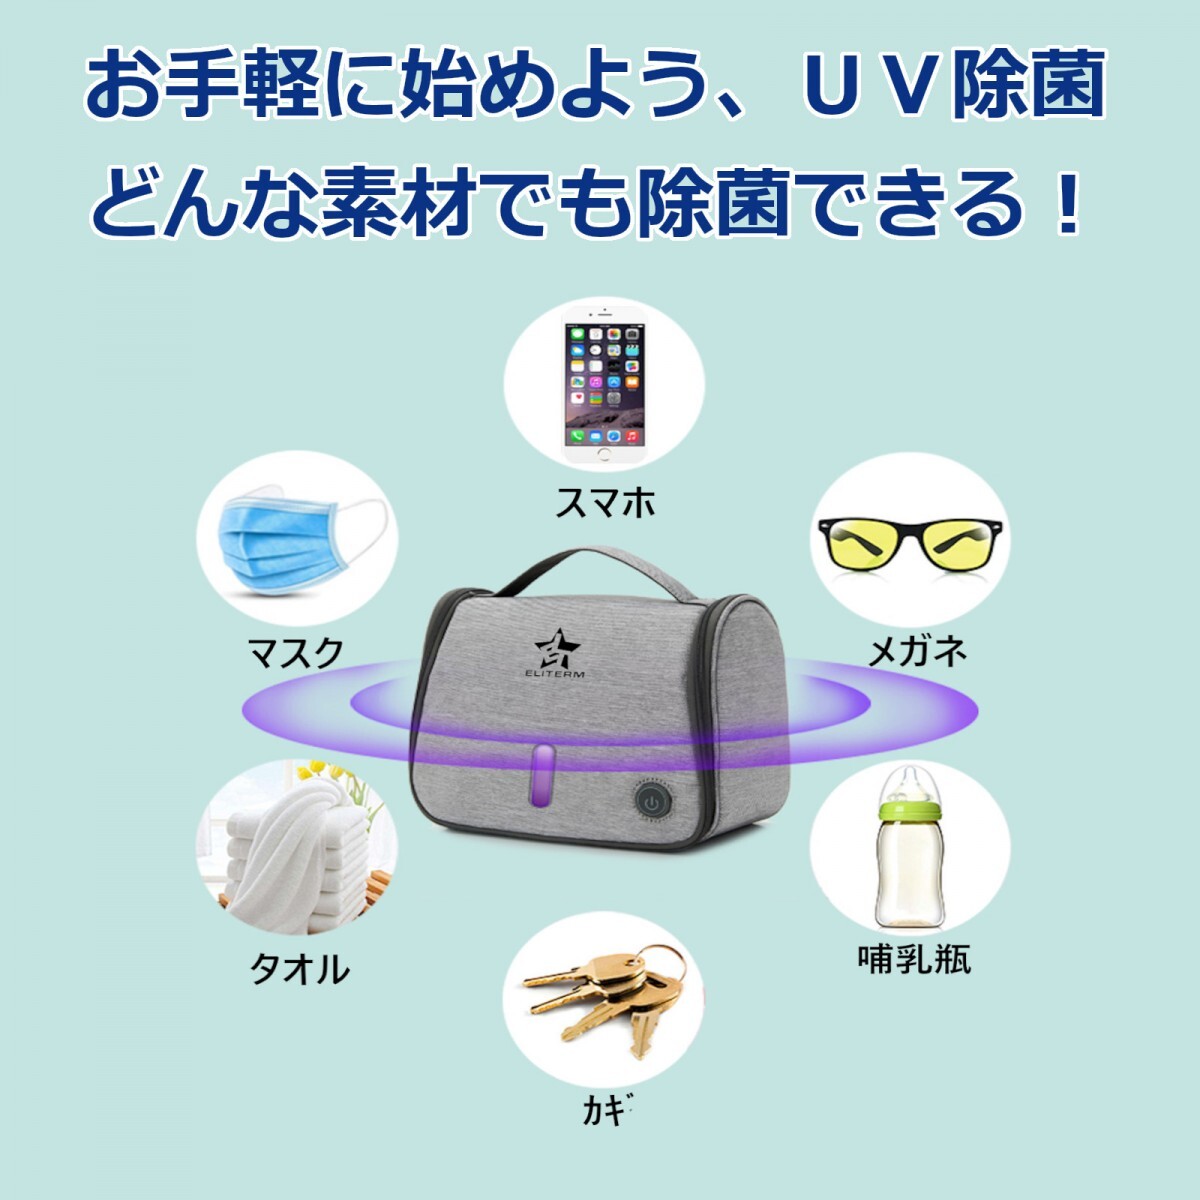 ... жиклер   сумка  ...  бактерия  сумка   фиолетовый   наружная линия  дезинфекция  UV...  бактерия   мешочек   ... жиклер   мешочек   ...  бактерия   маска ...  бактерия   дезинфекция   жизнь  бакалея    ...  бактерия     возможно   японский язык  инструкция 